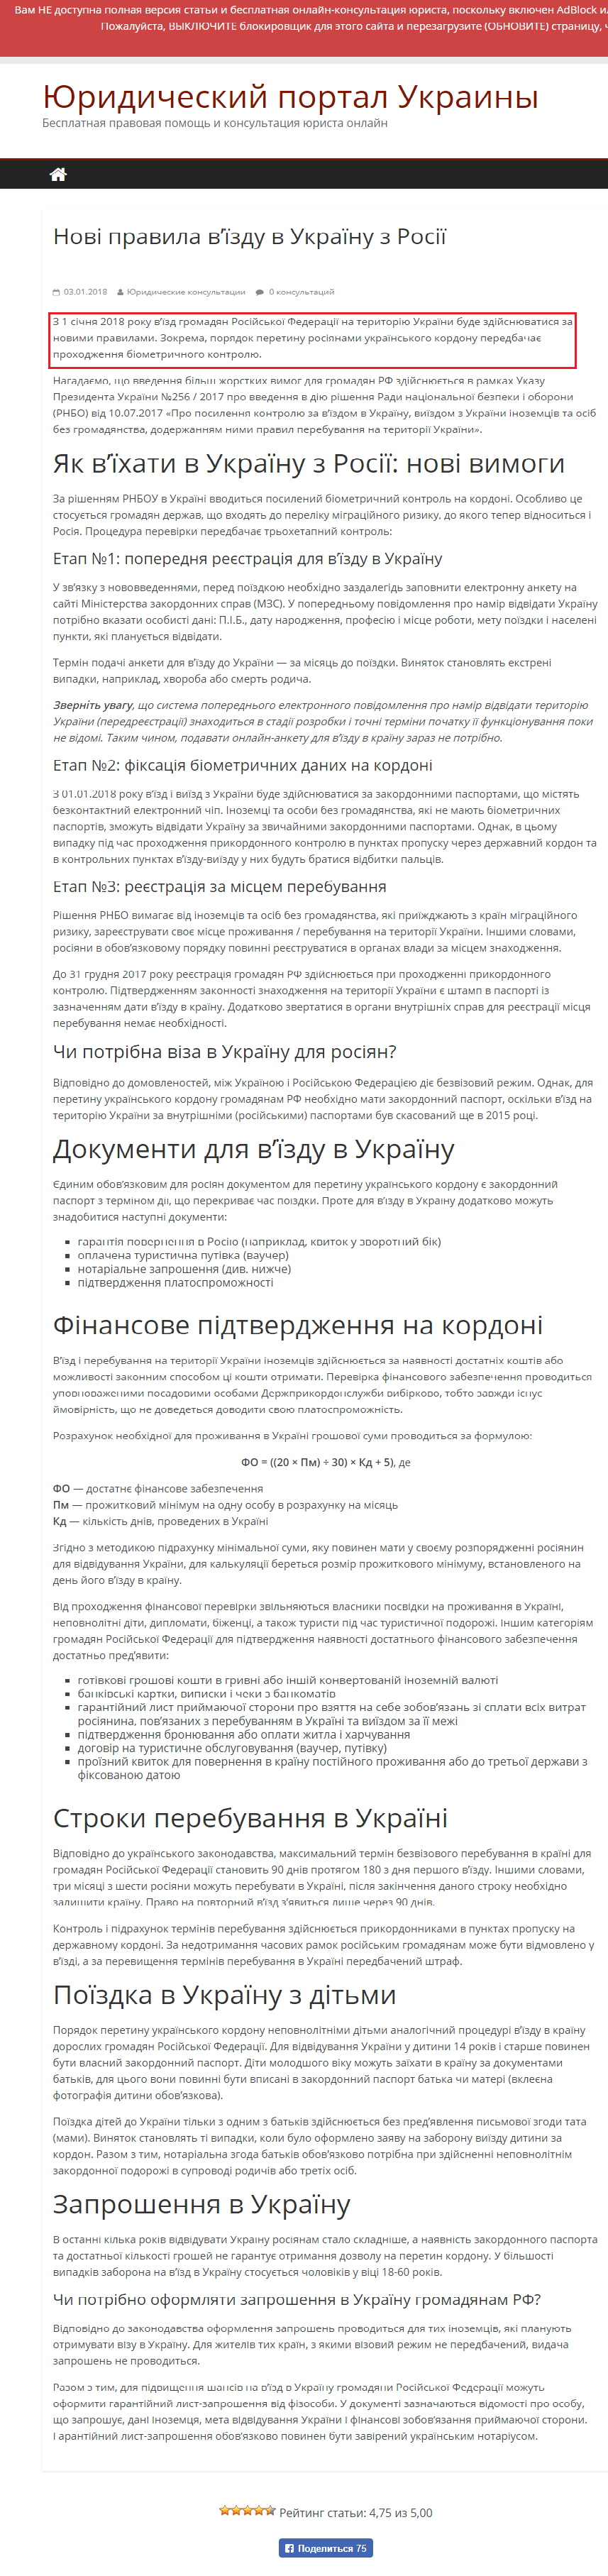 http://www.lawportal.com.ua/novi-pravila-vjizdu-rosijan-v-ukrainu.html